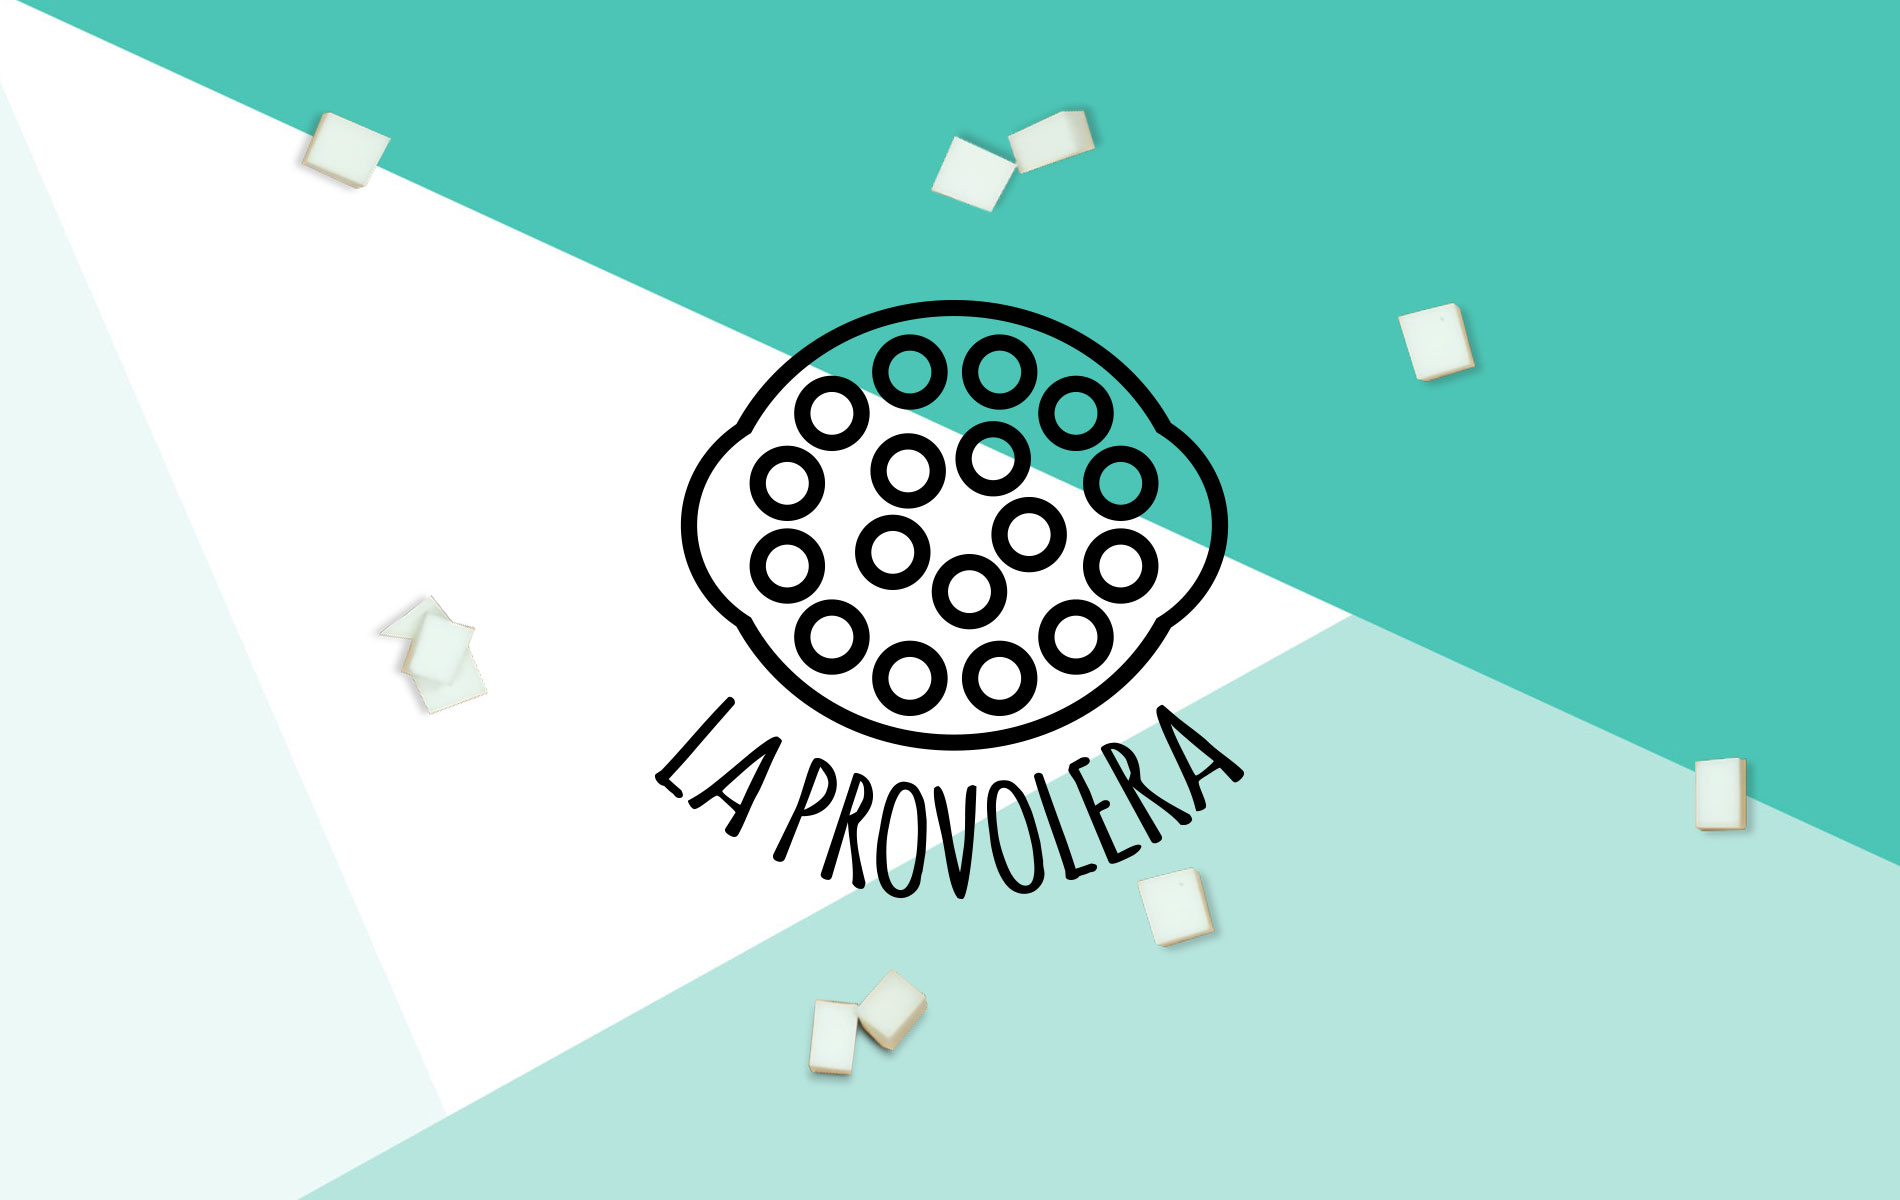 branding-la-provolera-creacion-de-marca-sergio-patier-creativo-grafico-madrid